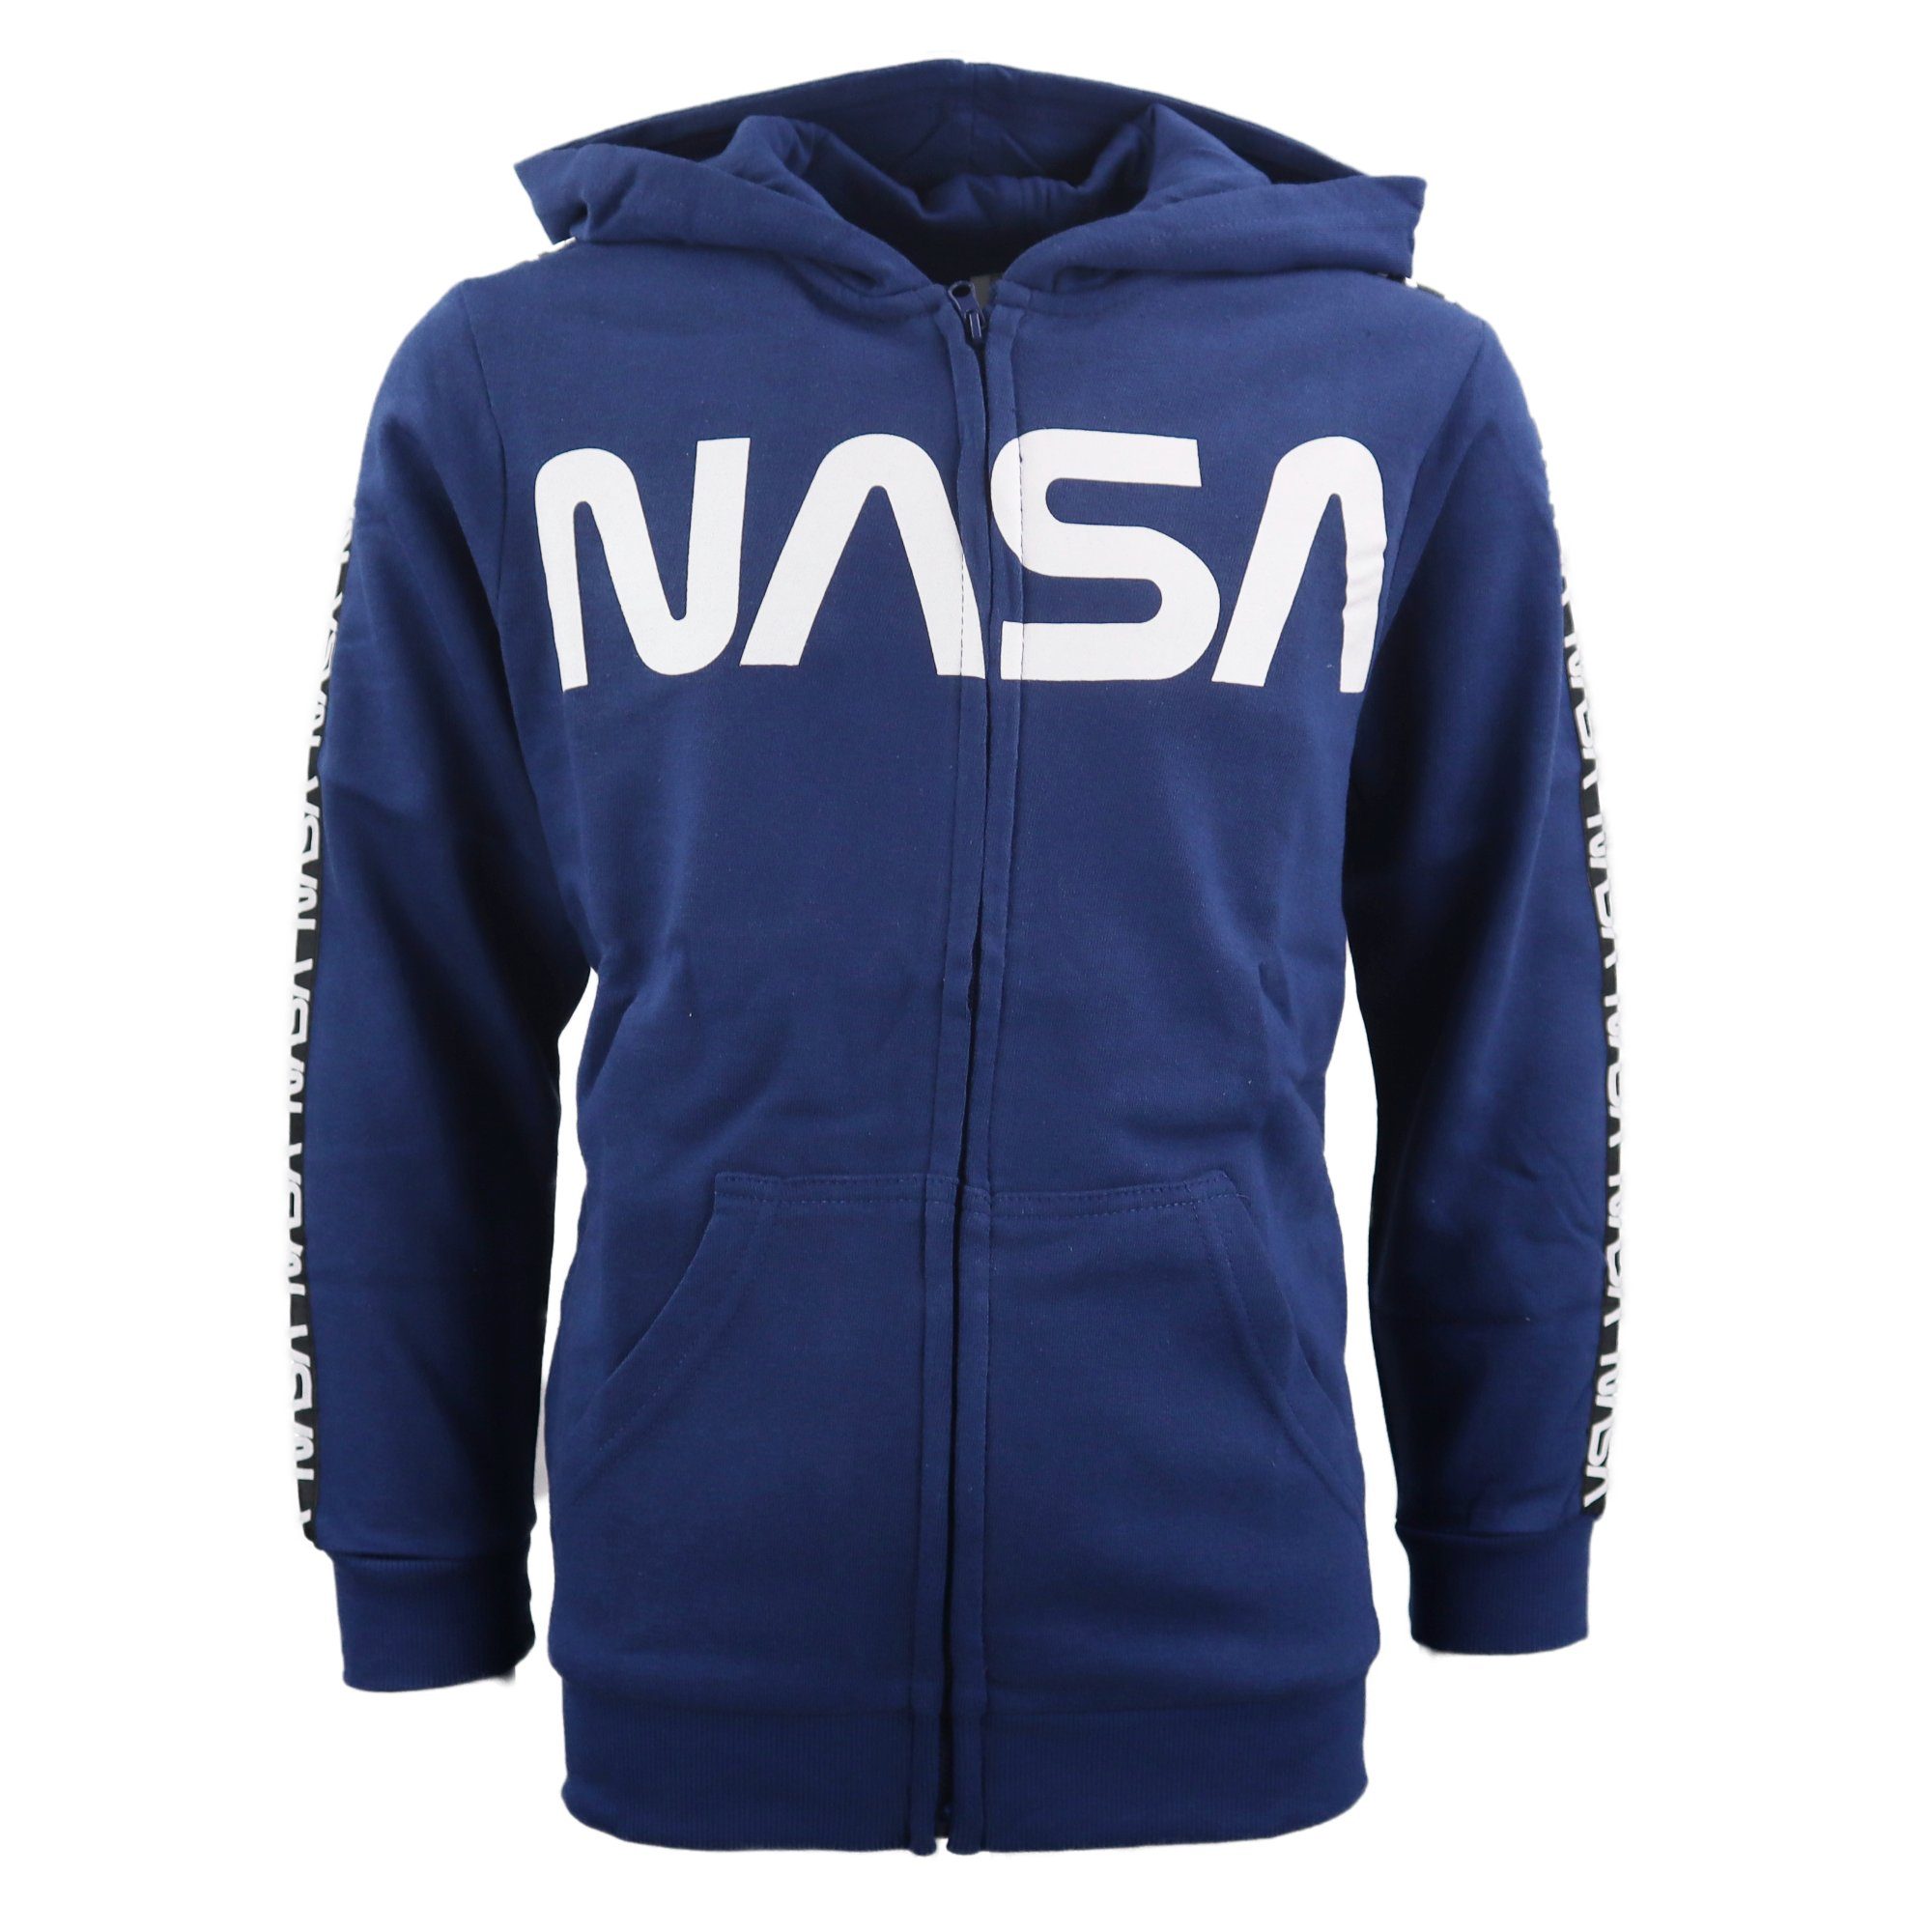 NASA Hoodie NASA Jungen Jugend Kinder Kapuzen Pulli Gr. 134 bis 164, 100% Baumwolle, Blau | Sweatshirts